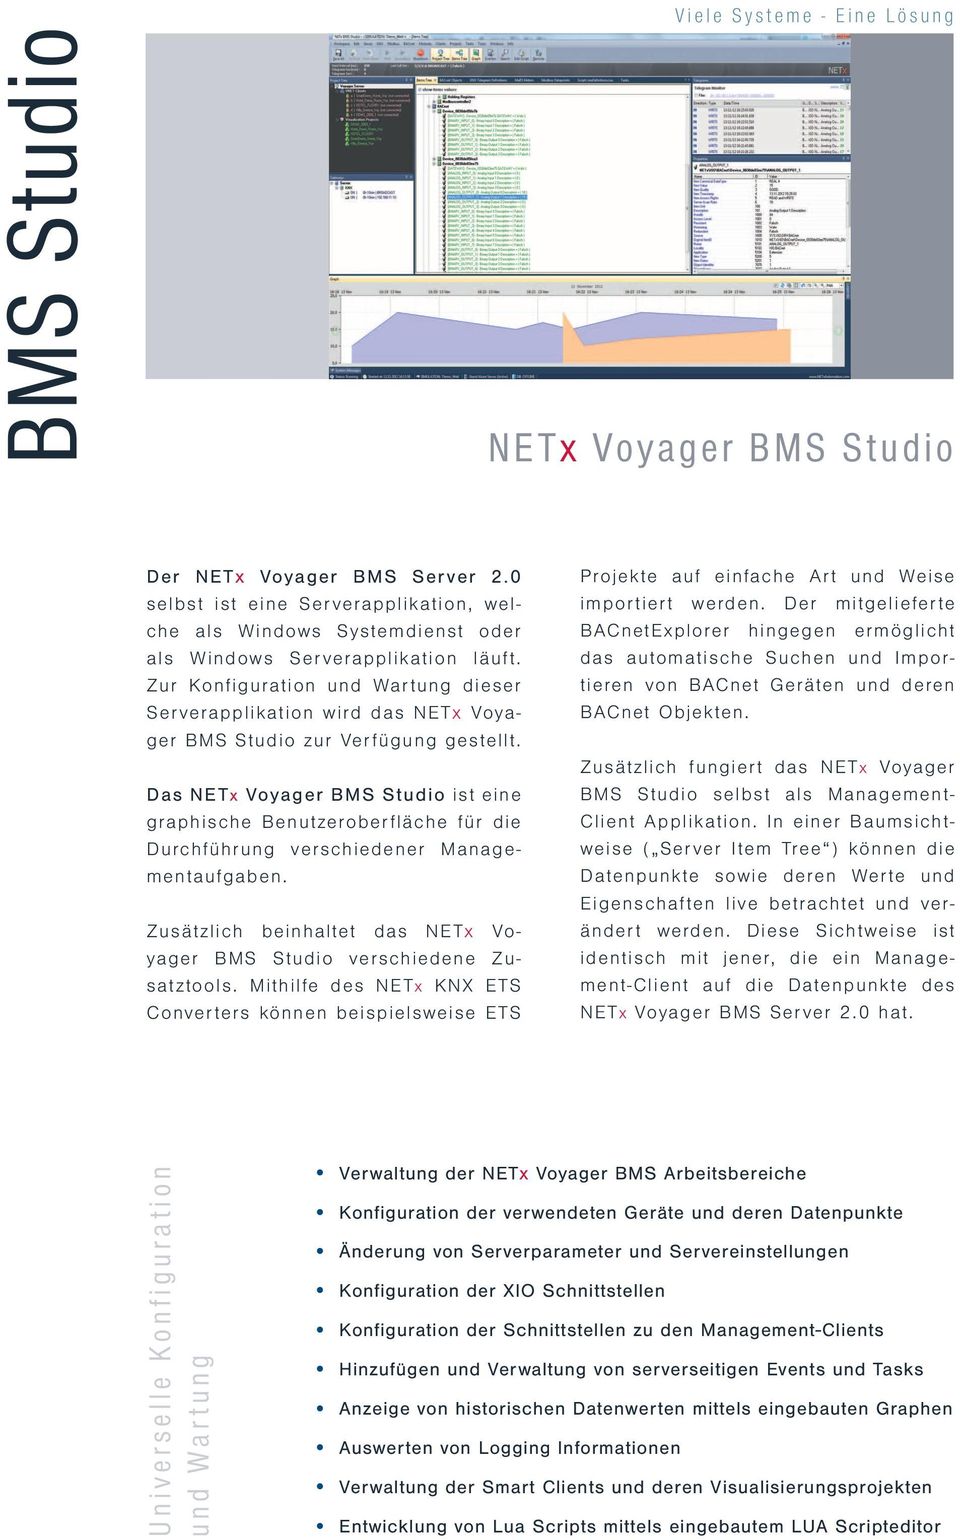 Das NETx Voyager BMS Studio ist eine graphische Benutzeroberfläche für die Durchführung verschiedener Managementaufgaben. Zusätzlich beinhaltet das NETx Voyager BMS Studio verschiedene Zusatztools.